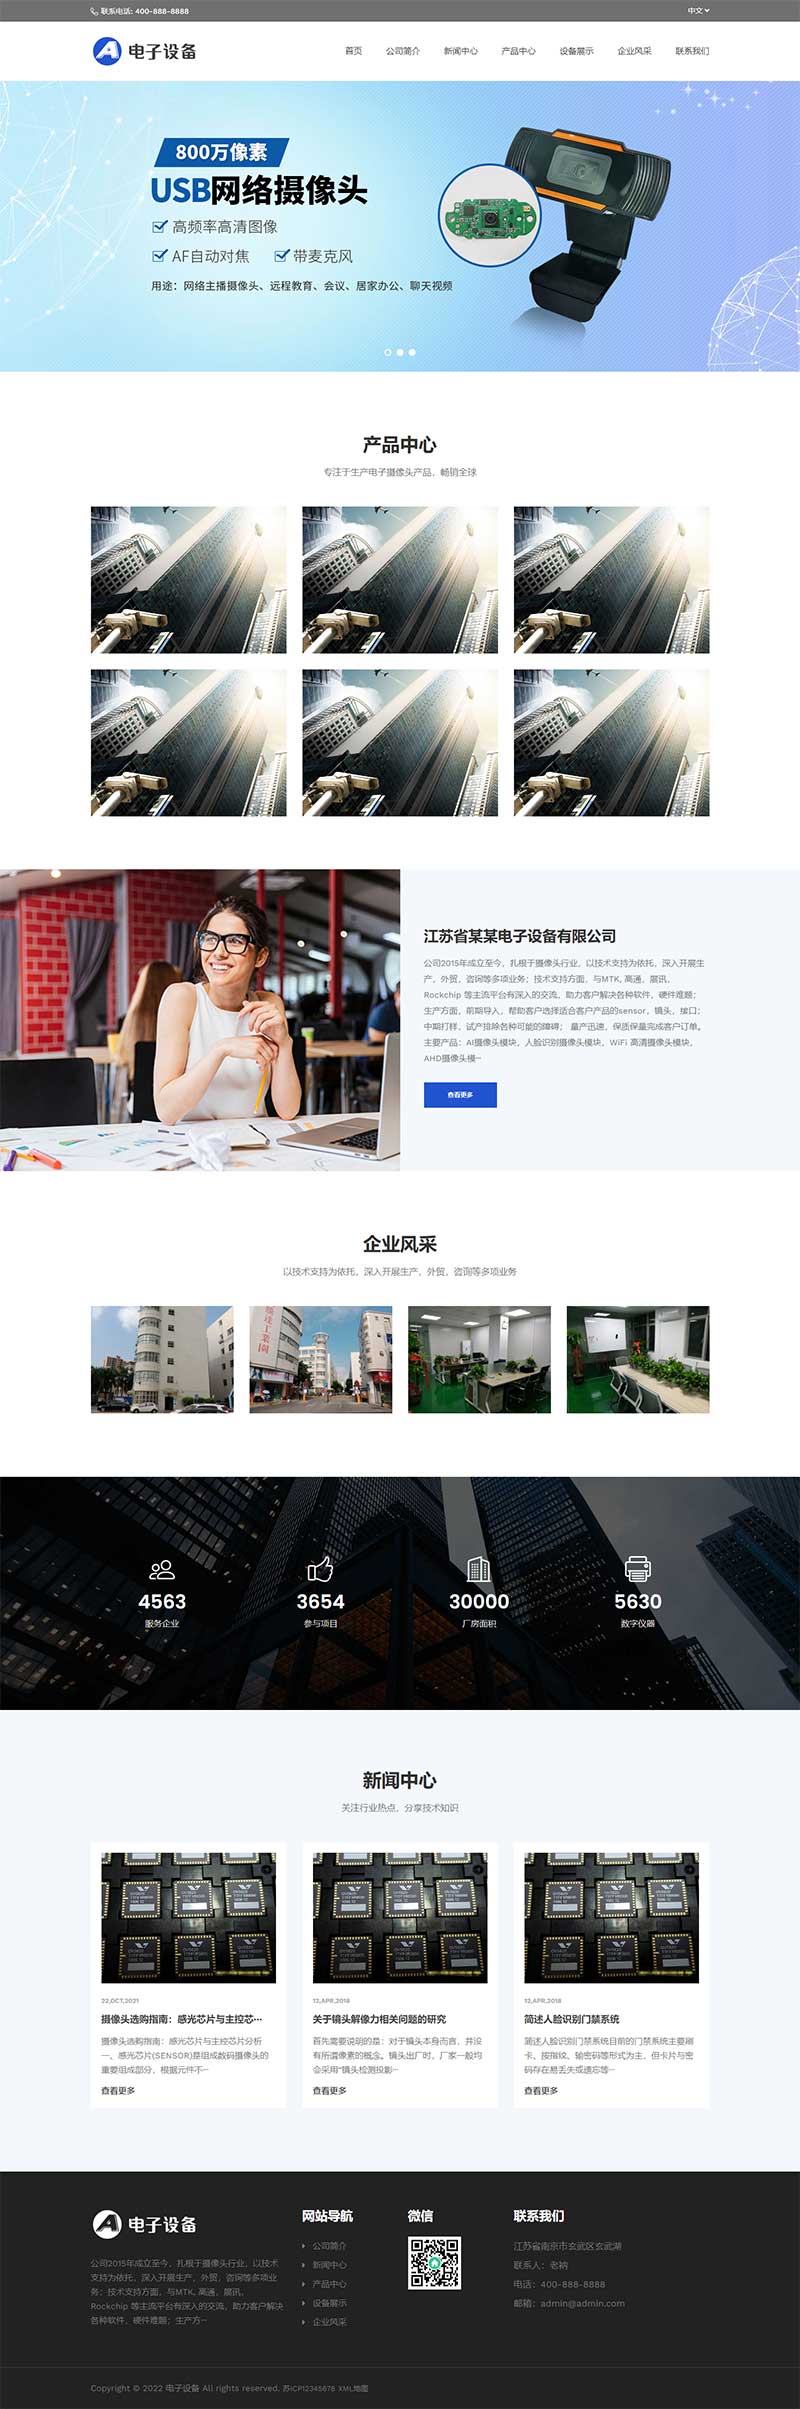 中英文双语网络摄像头探头pbootcms网站模板 电子摄像头设备网站源码